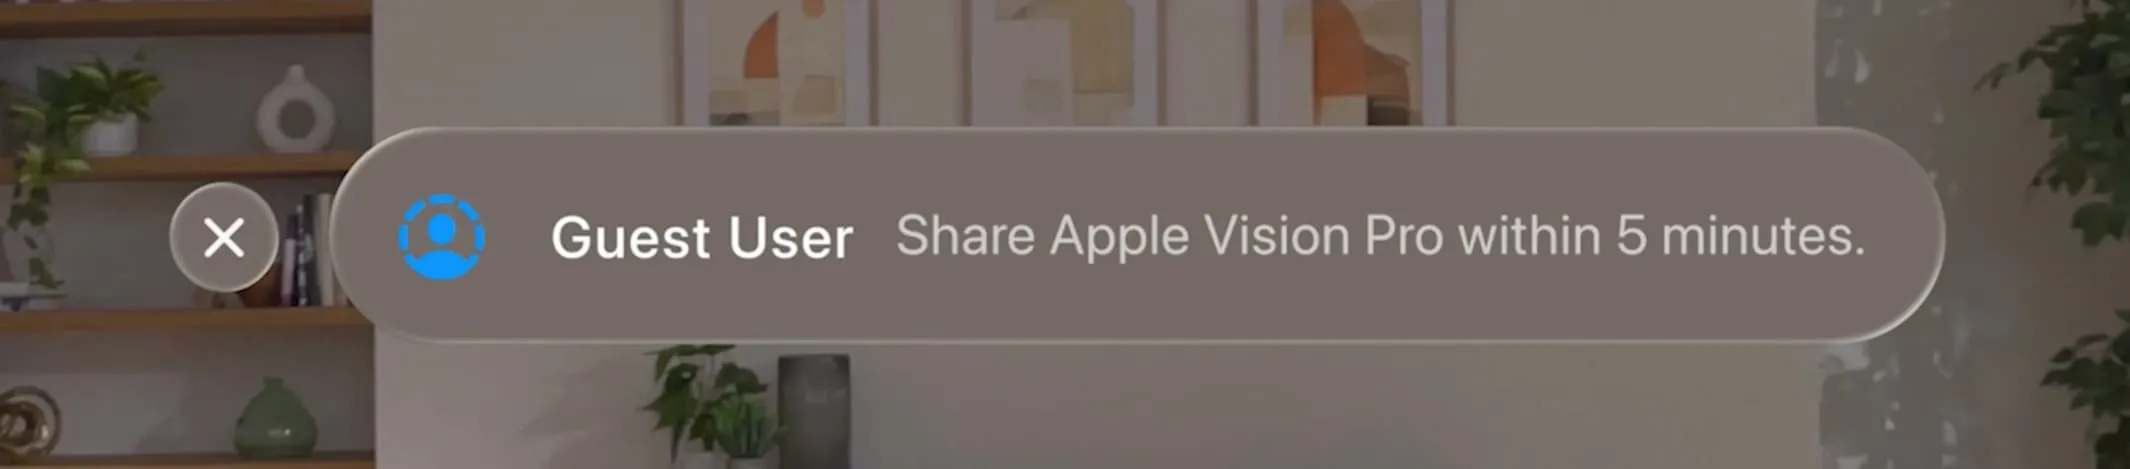 Comparta Apple Vision Pro con un usuario invitado en 5 minutos